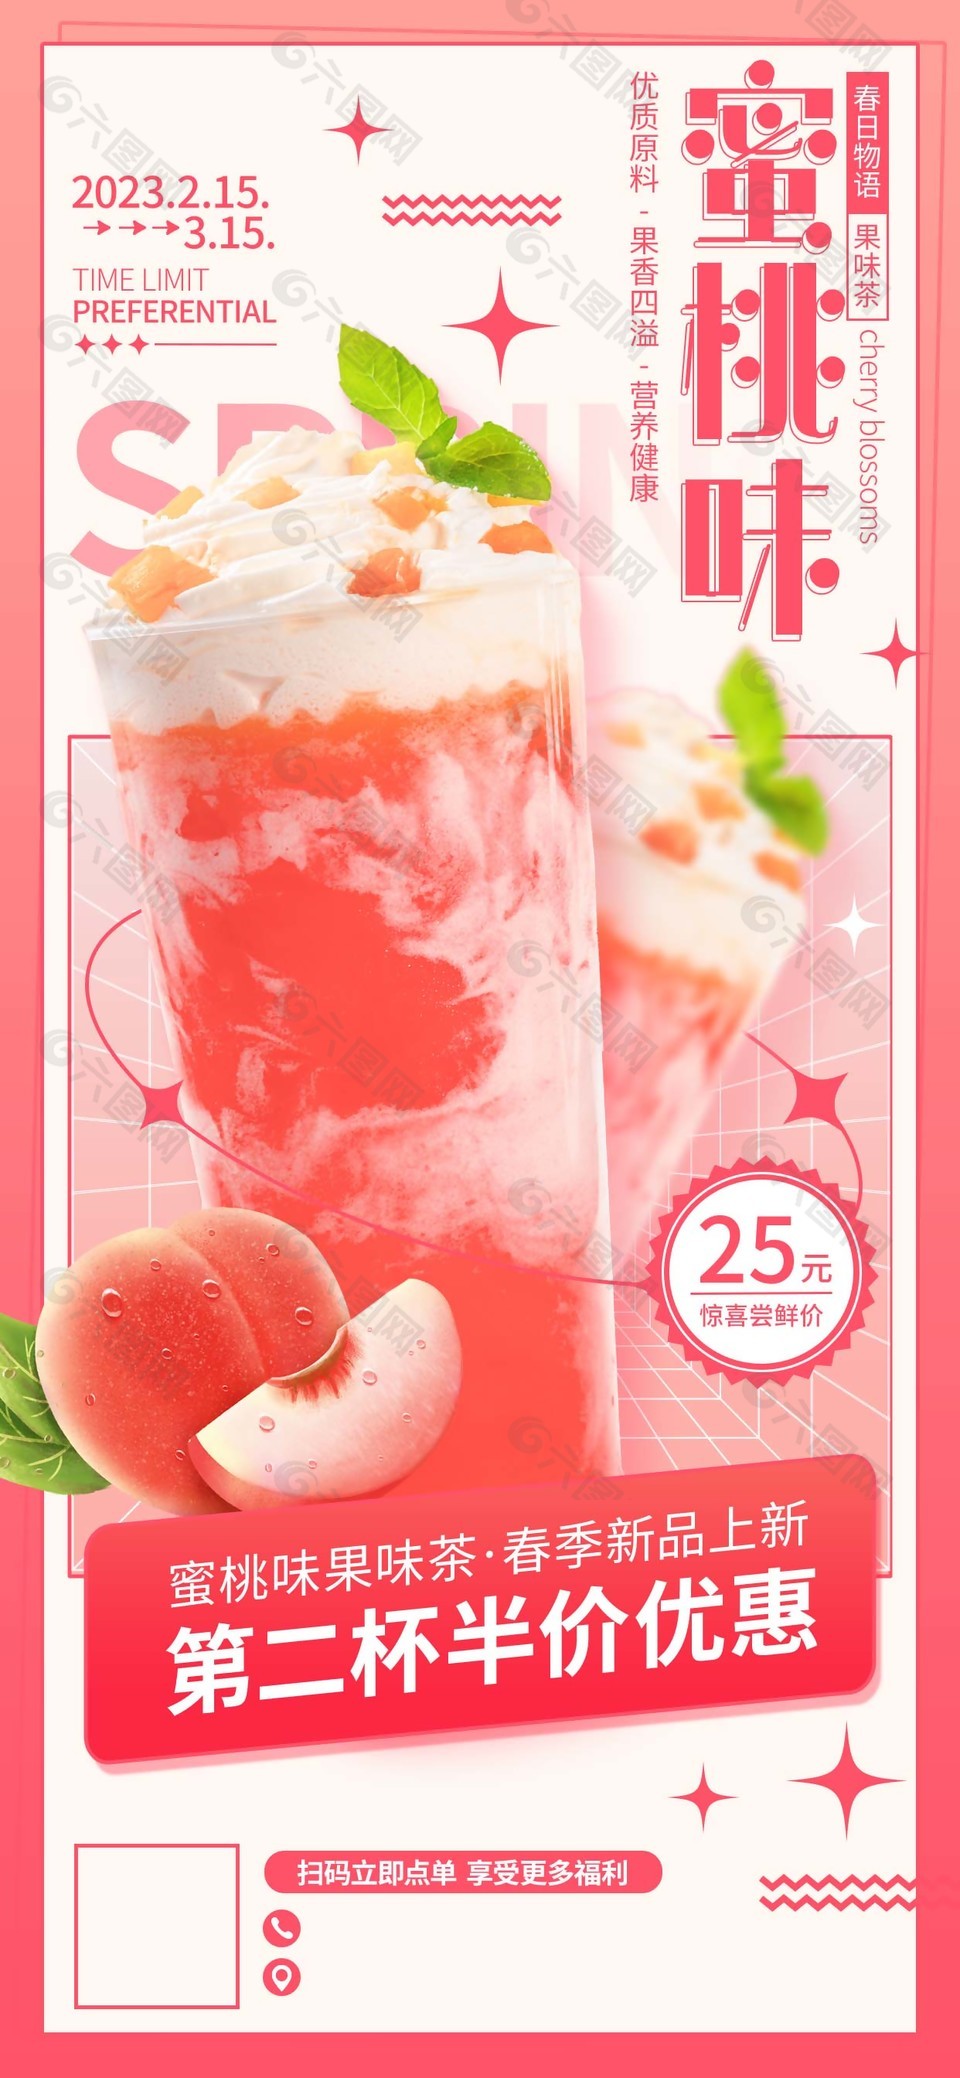 新品蜜桃味奶茶海报素材设计